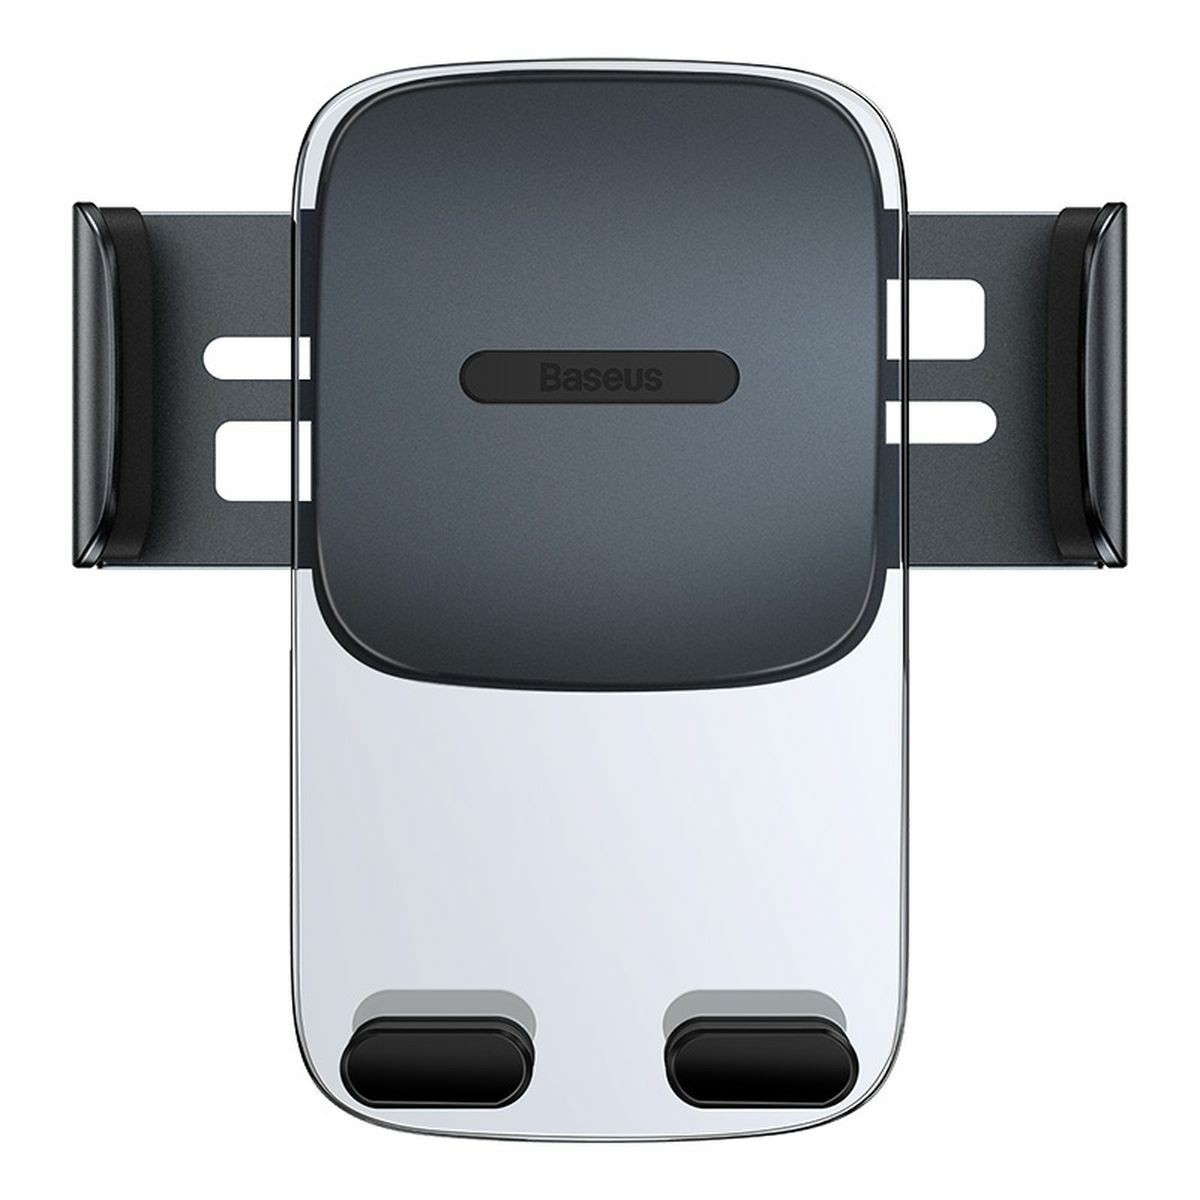 Kép 4/11 - Baseus autós telefontartó, Easy Control Clamp Holder (szellőzőrácsra szerelhető), fekete (SUYK000101)